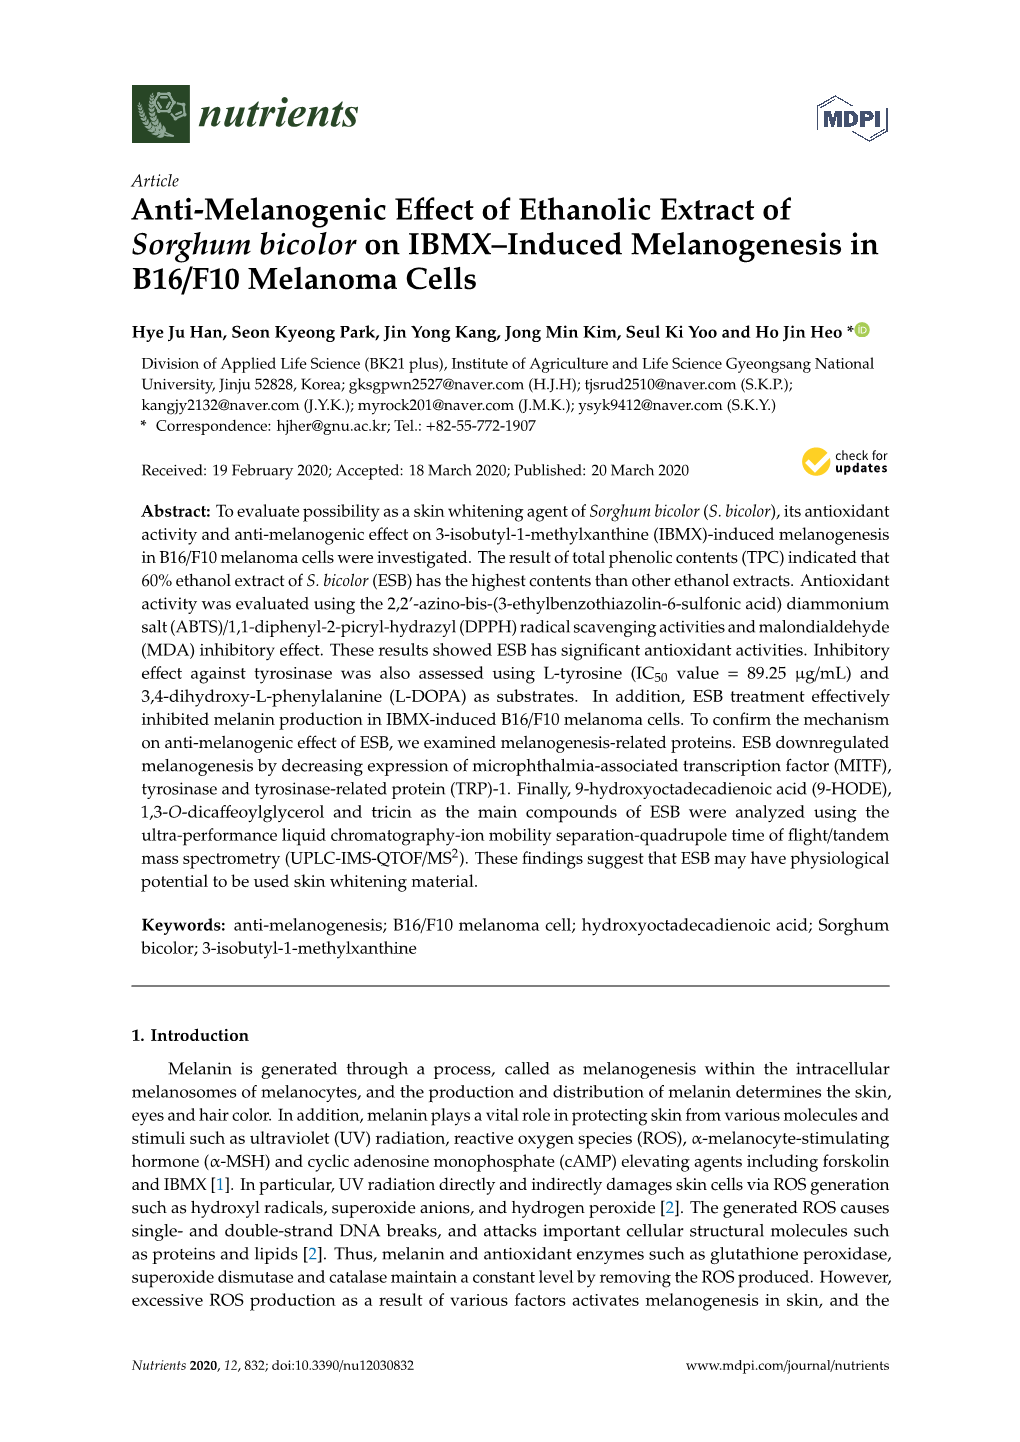 Anti-Melanogenic Effect of Ethanolic Extract of Sorghum Bicolor on IBMX–Induced Melanogenesis in B16/F10 Melanoma Cells